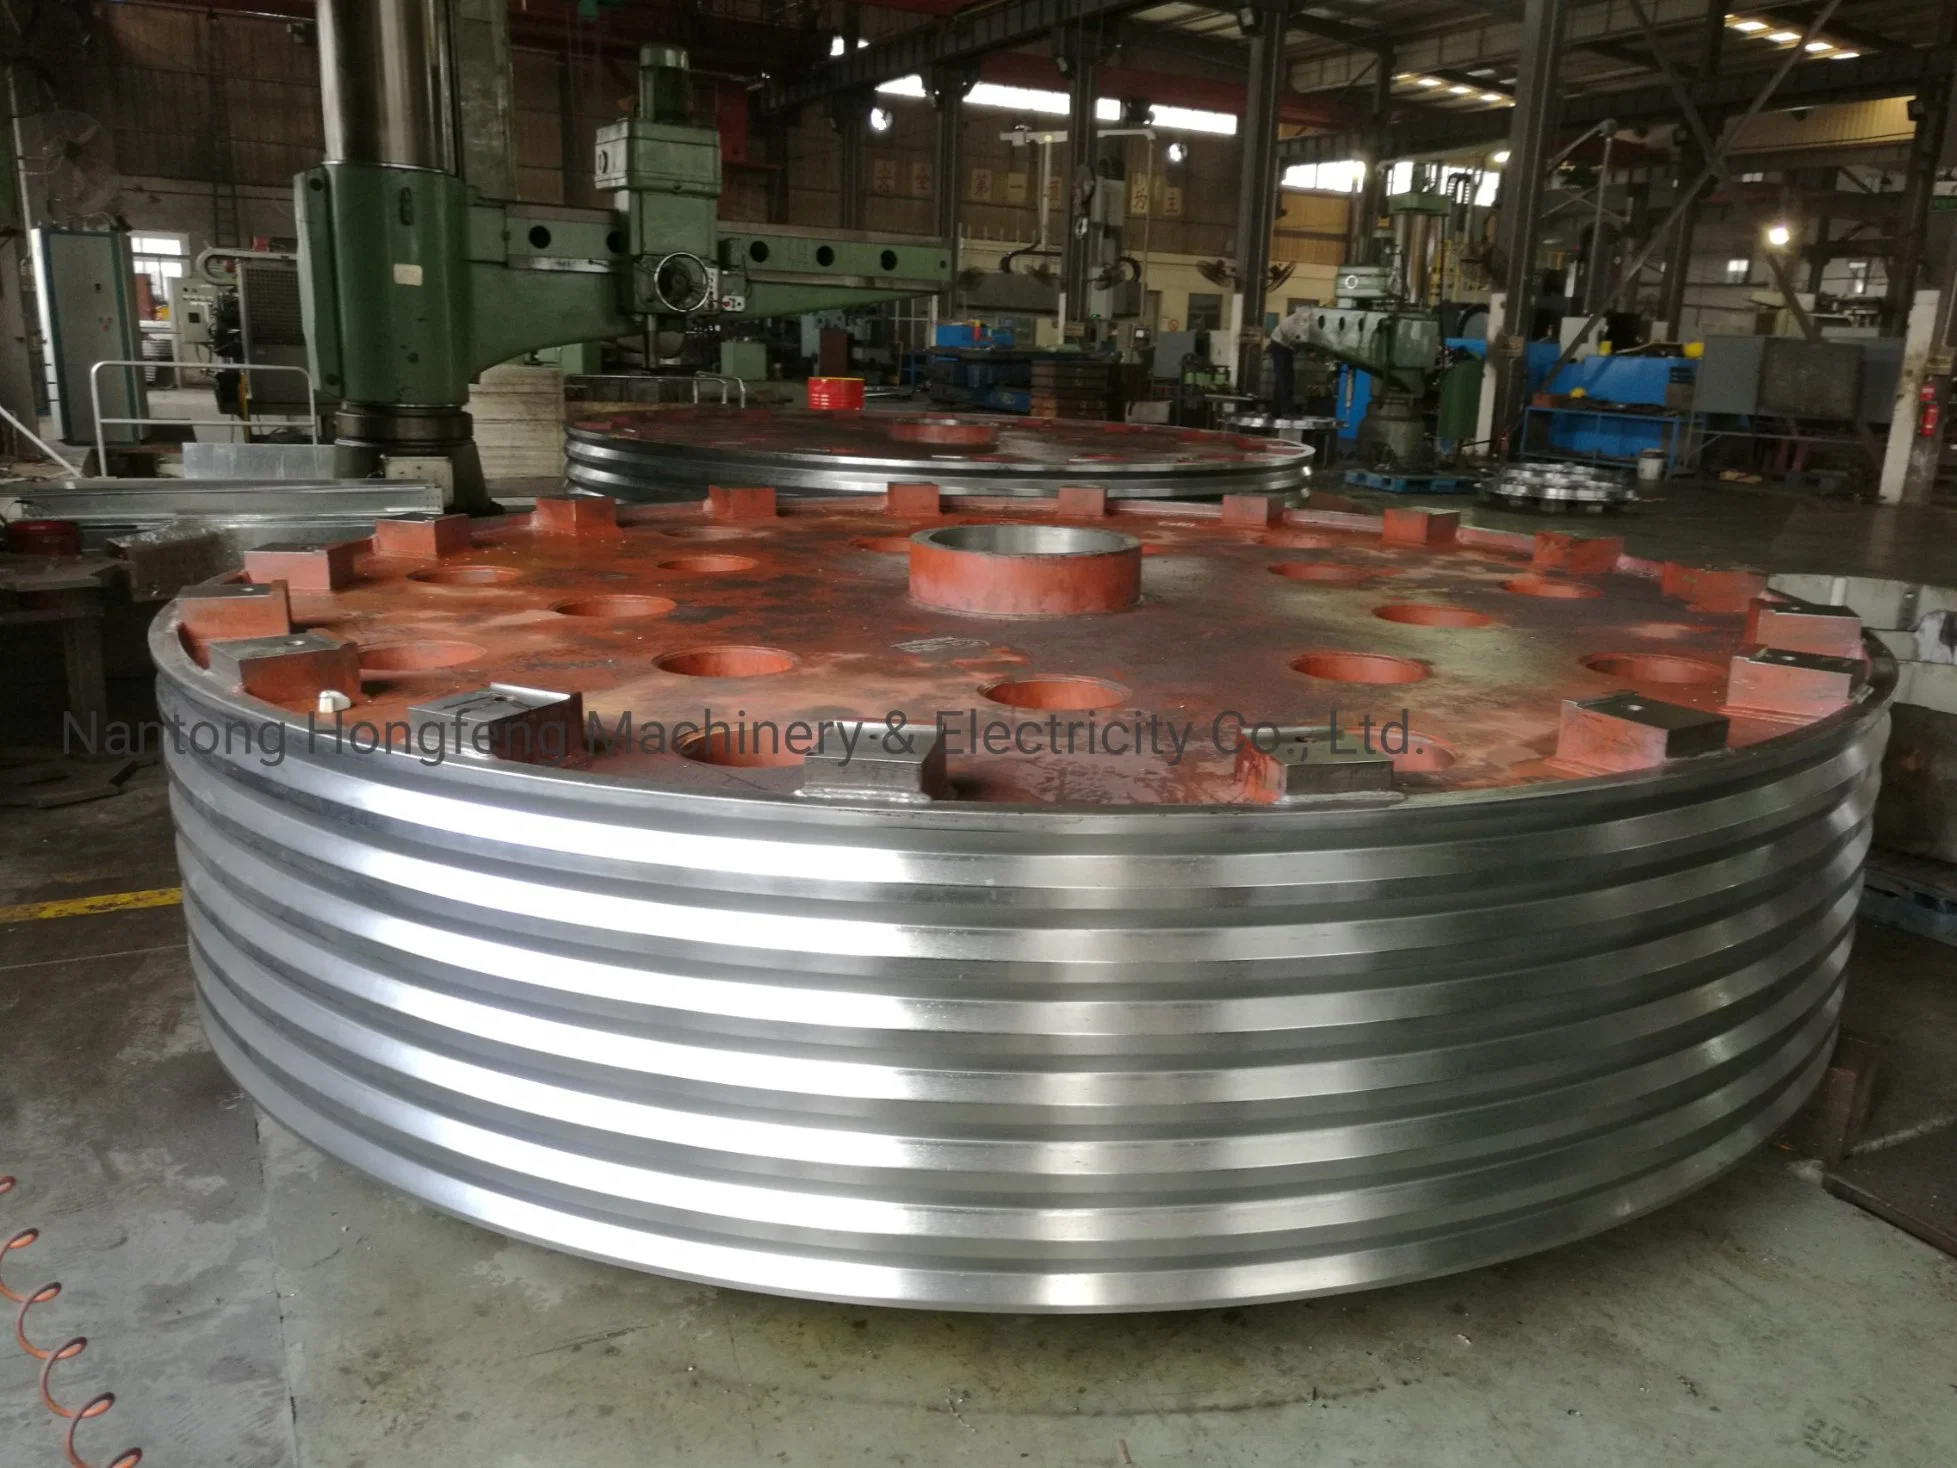 Hergestellt in China OEM-Präzision schwerer Stahlrahmen Gehäuseteil Maschinen Laserschneiden Schweißen